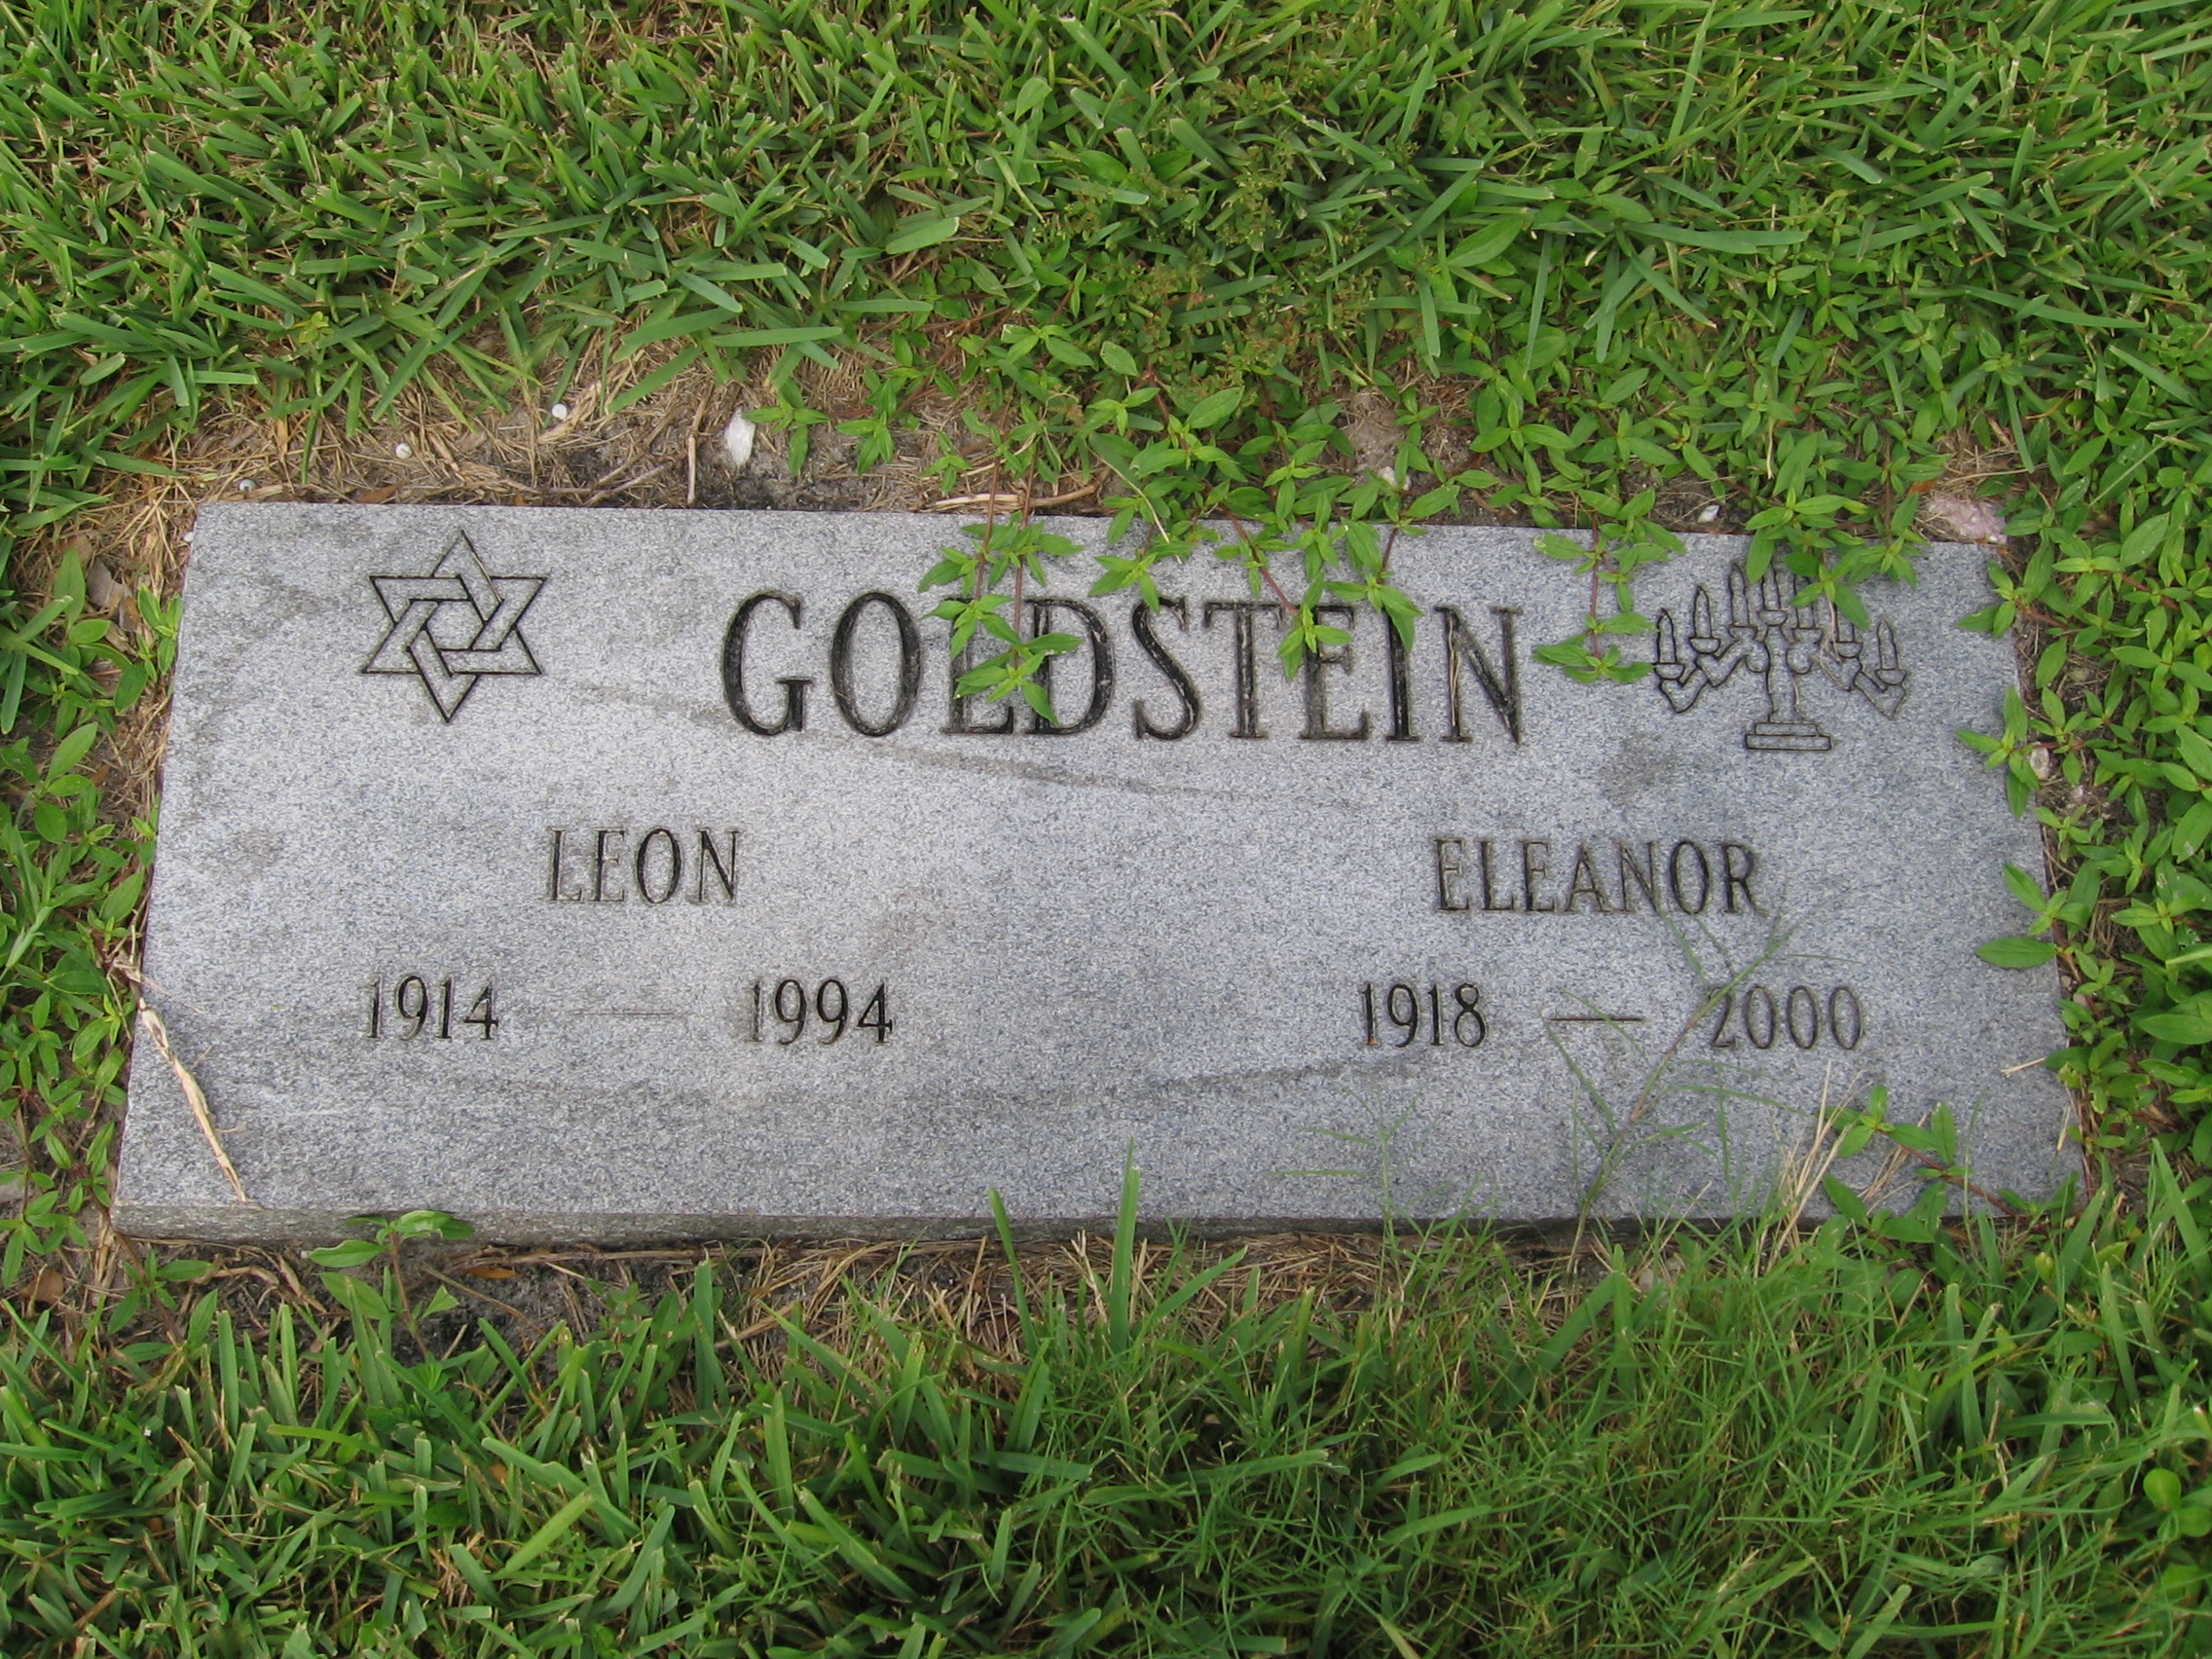 Leon Goldstein